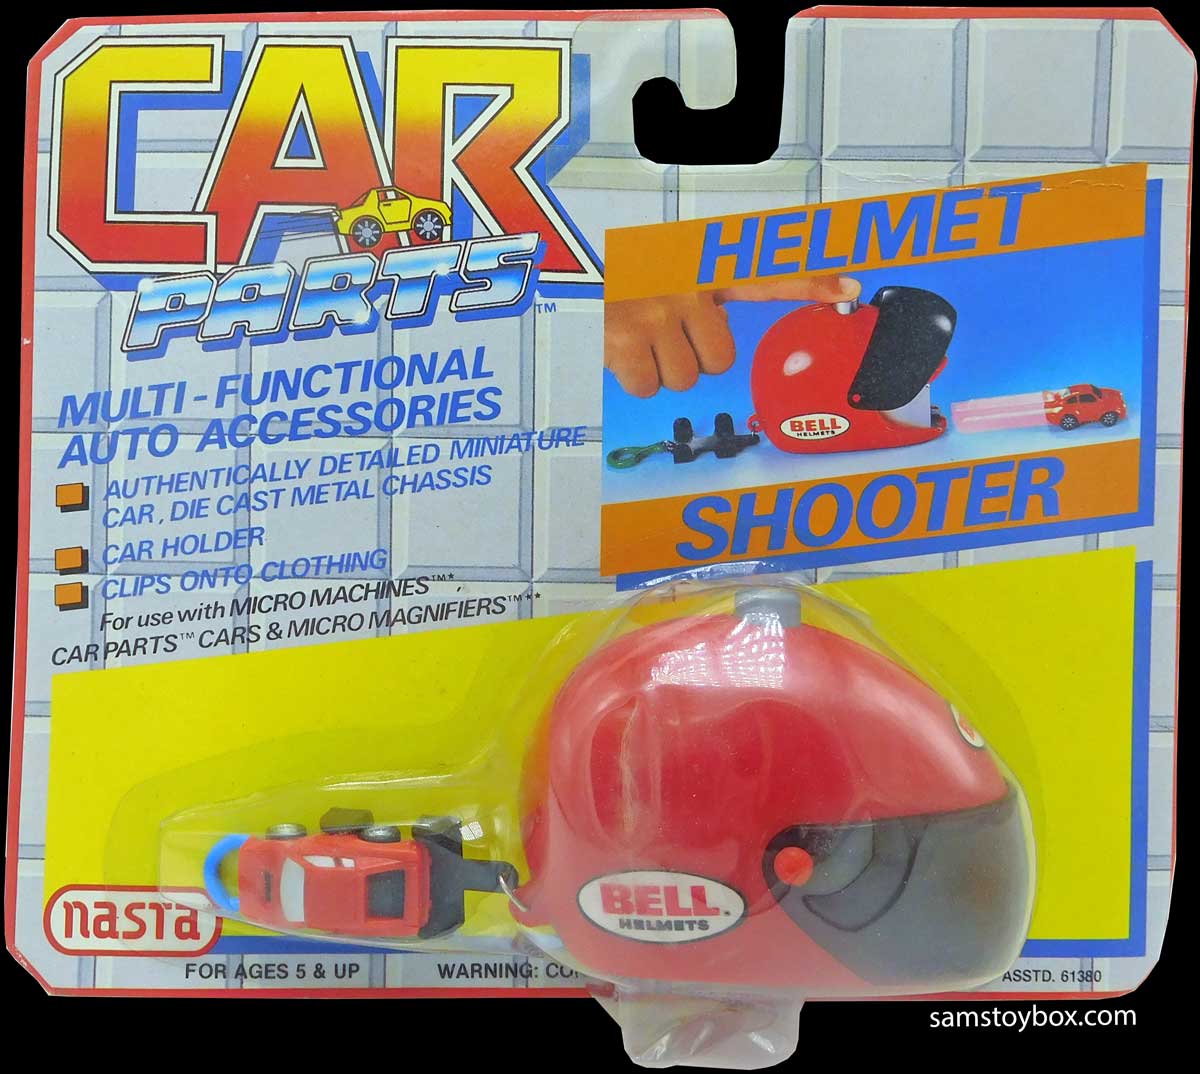 Nasta Car Parts Helmet Shooter Kit